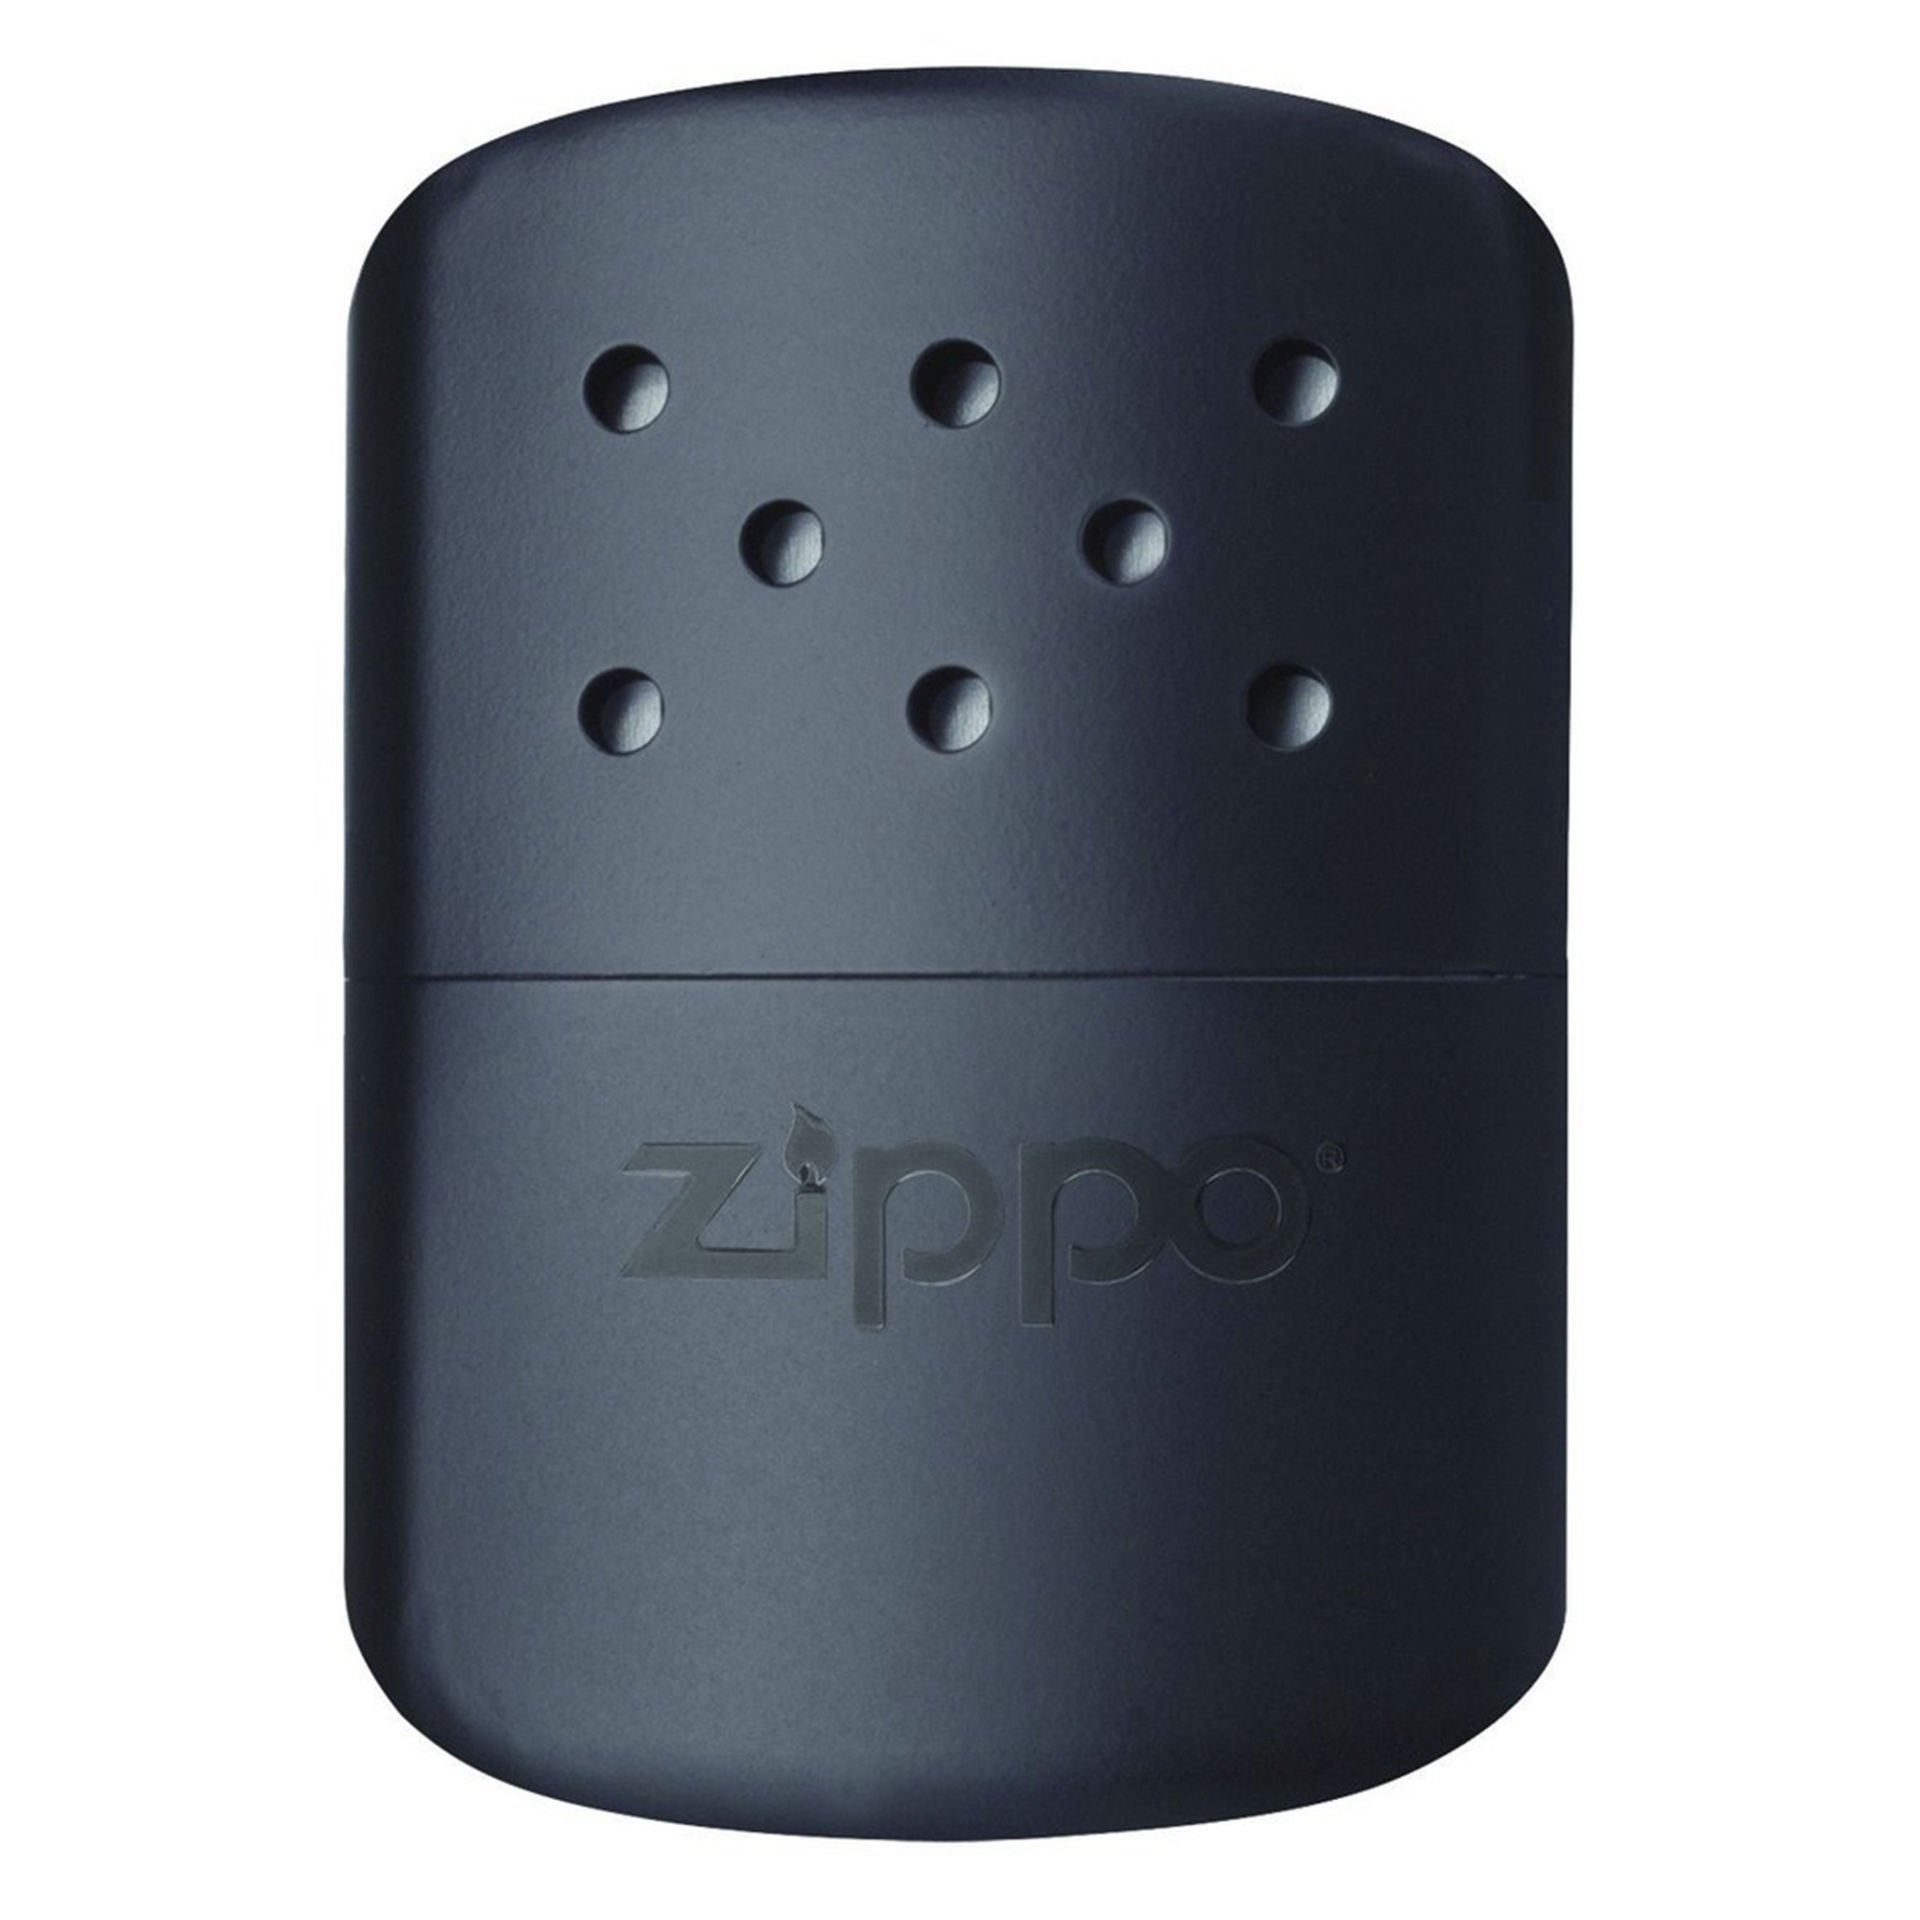 Zippo Hand Warmer (12 Saat El Isıtıcısı) - 40368